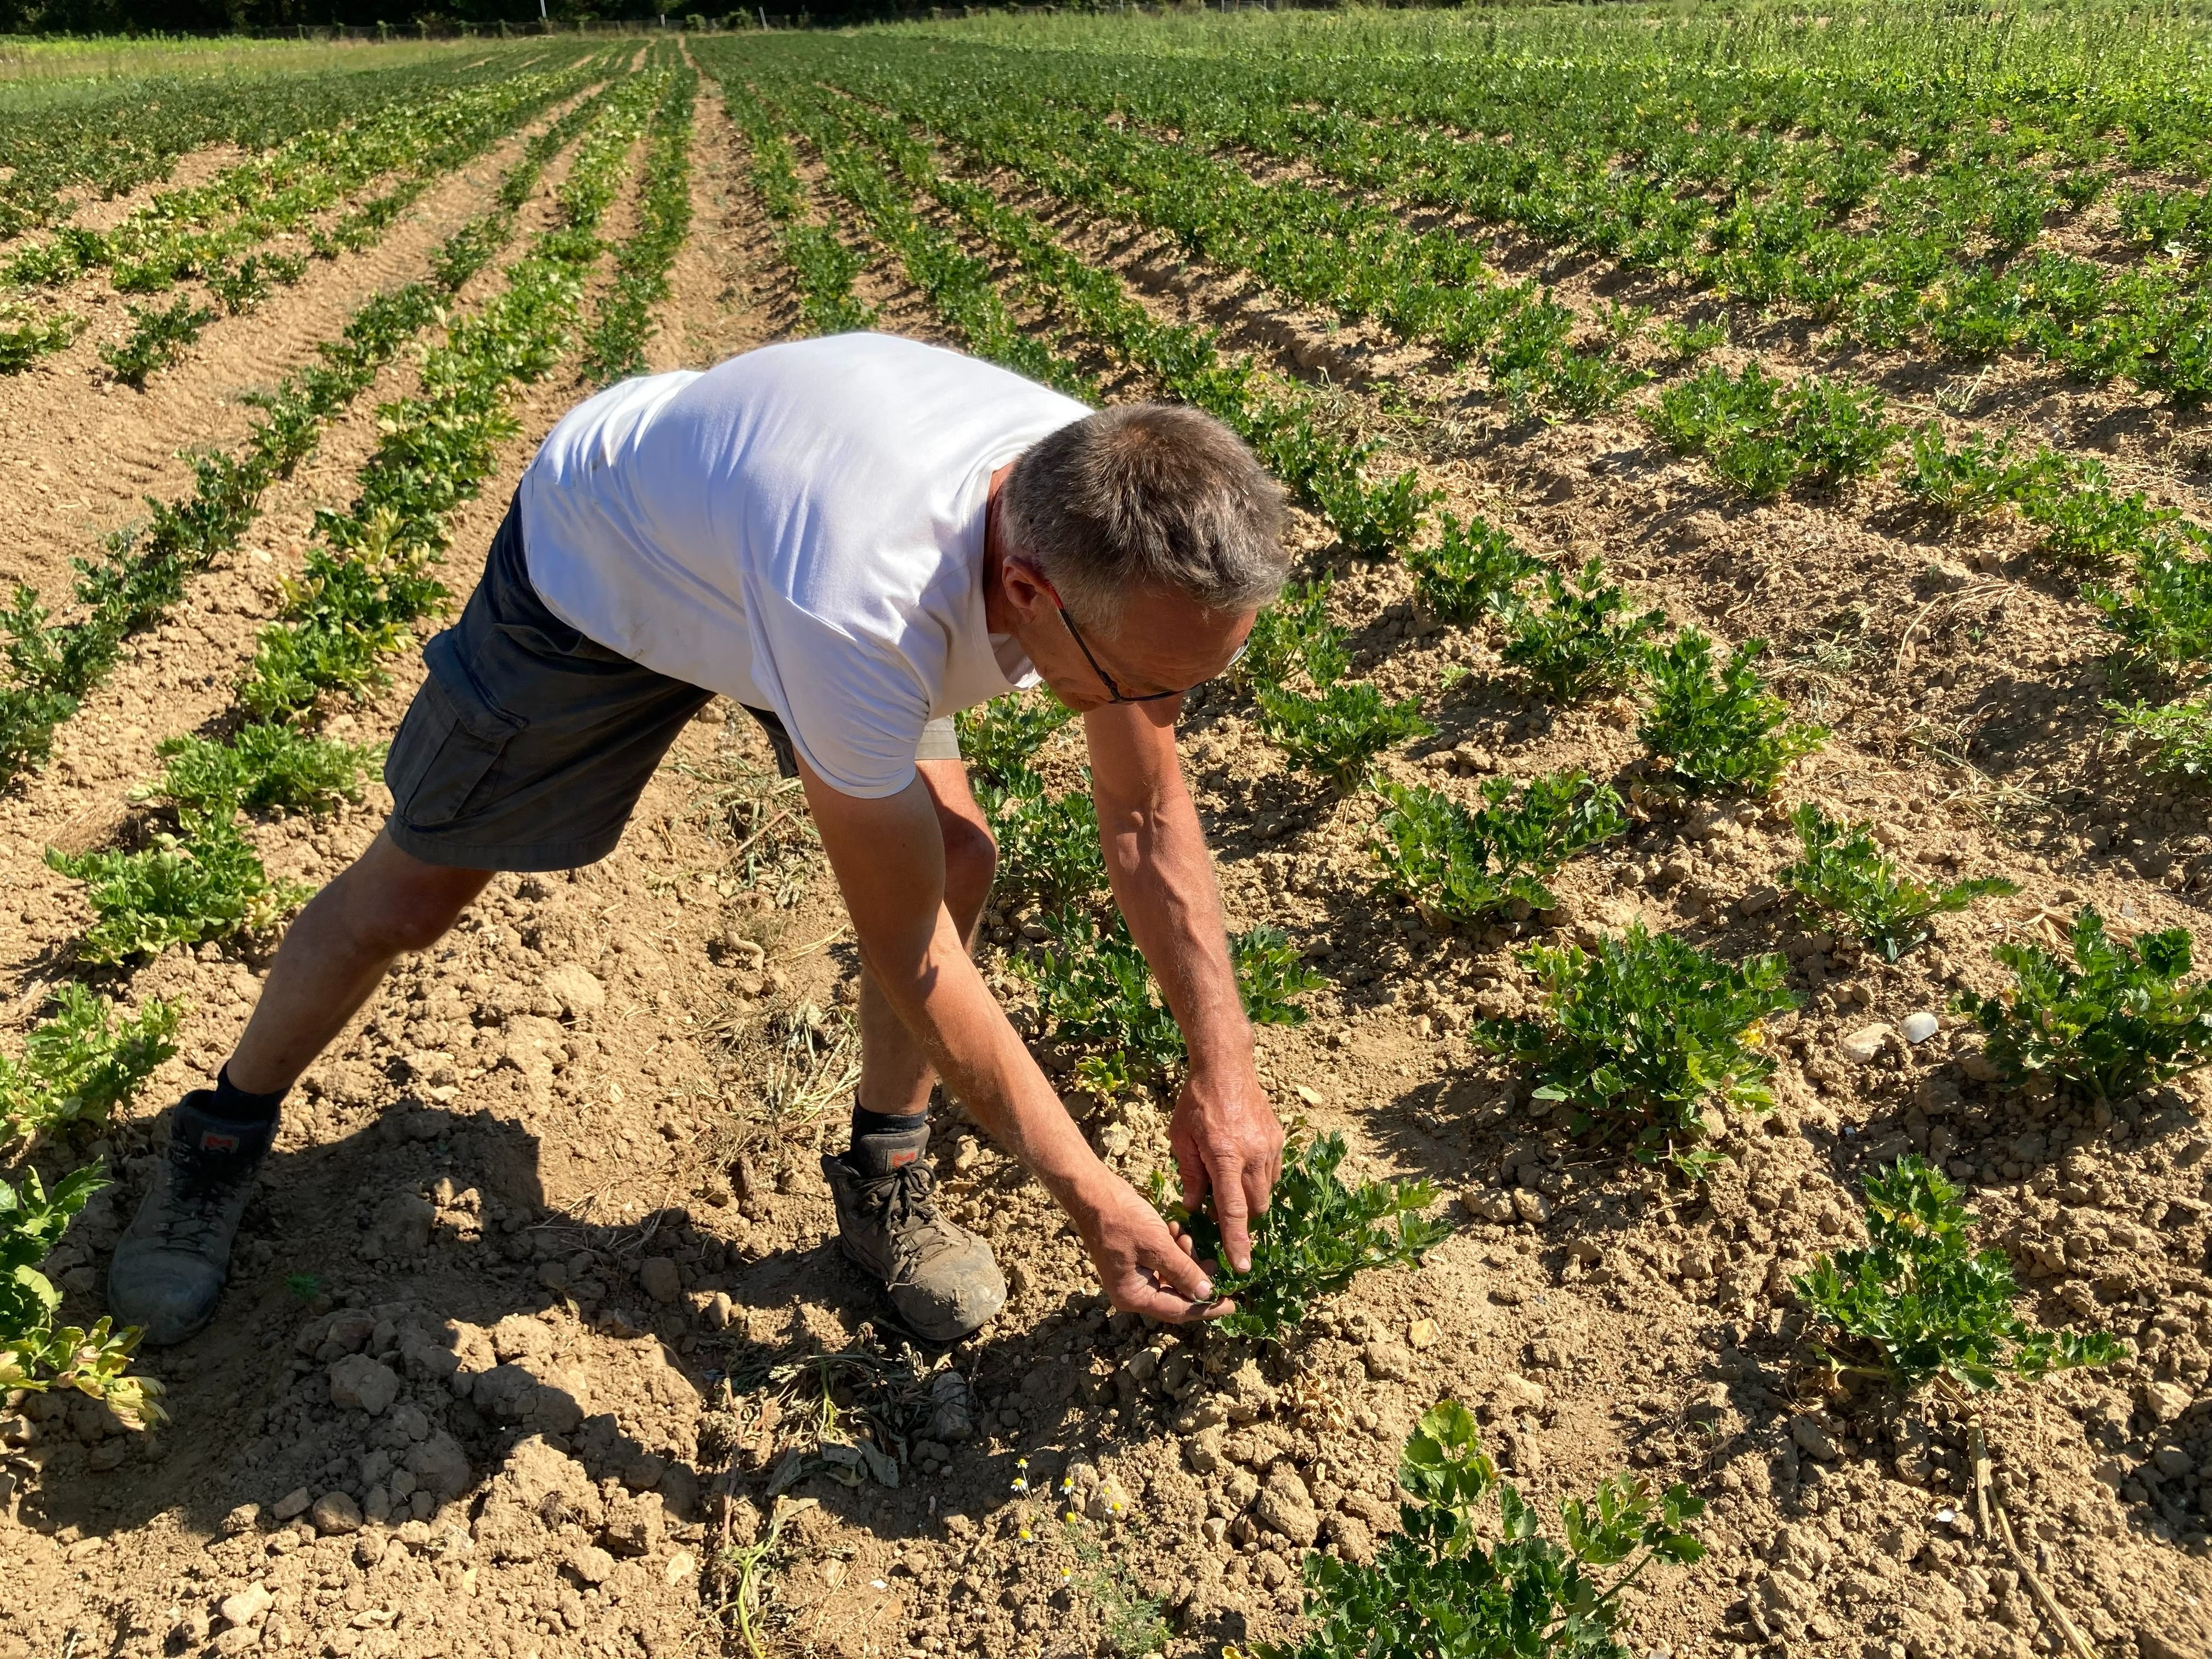 Cergy, le 11 août. La production de légumes de La Rivoise est elle aussi impactée par la sècheresse. Vincent Duval le constate notamment sur ses plants de céleris qui peinent à grossir. LP/Anne Collin